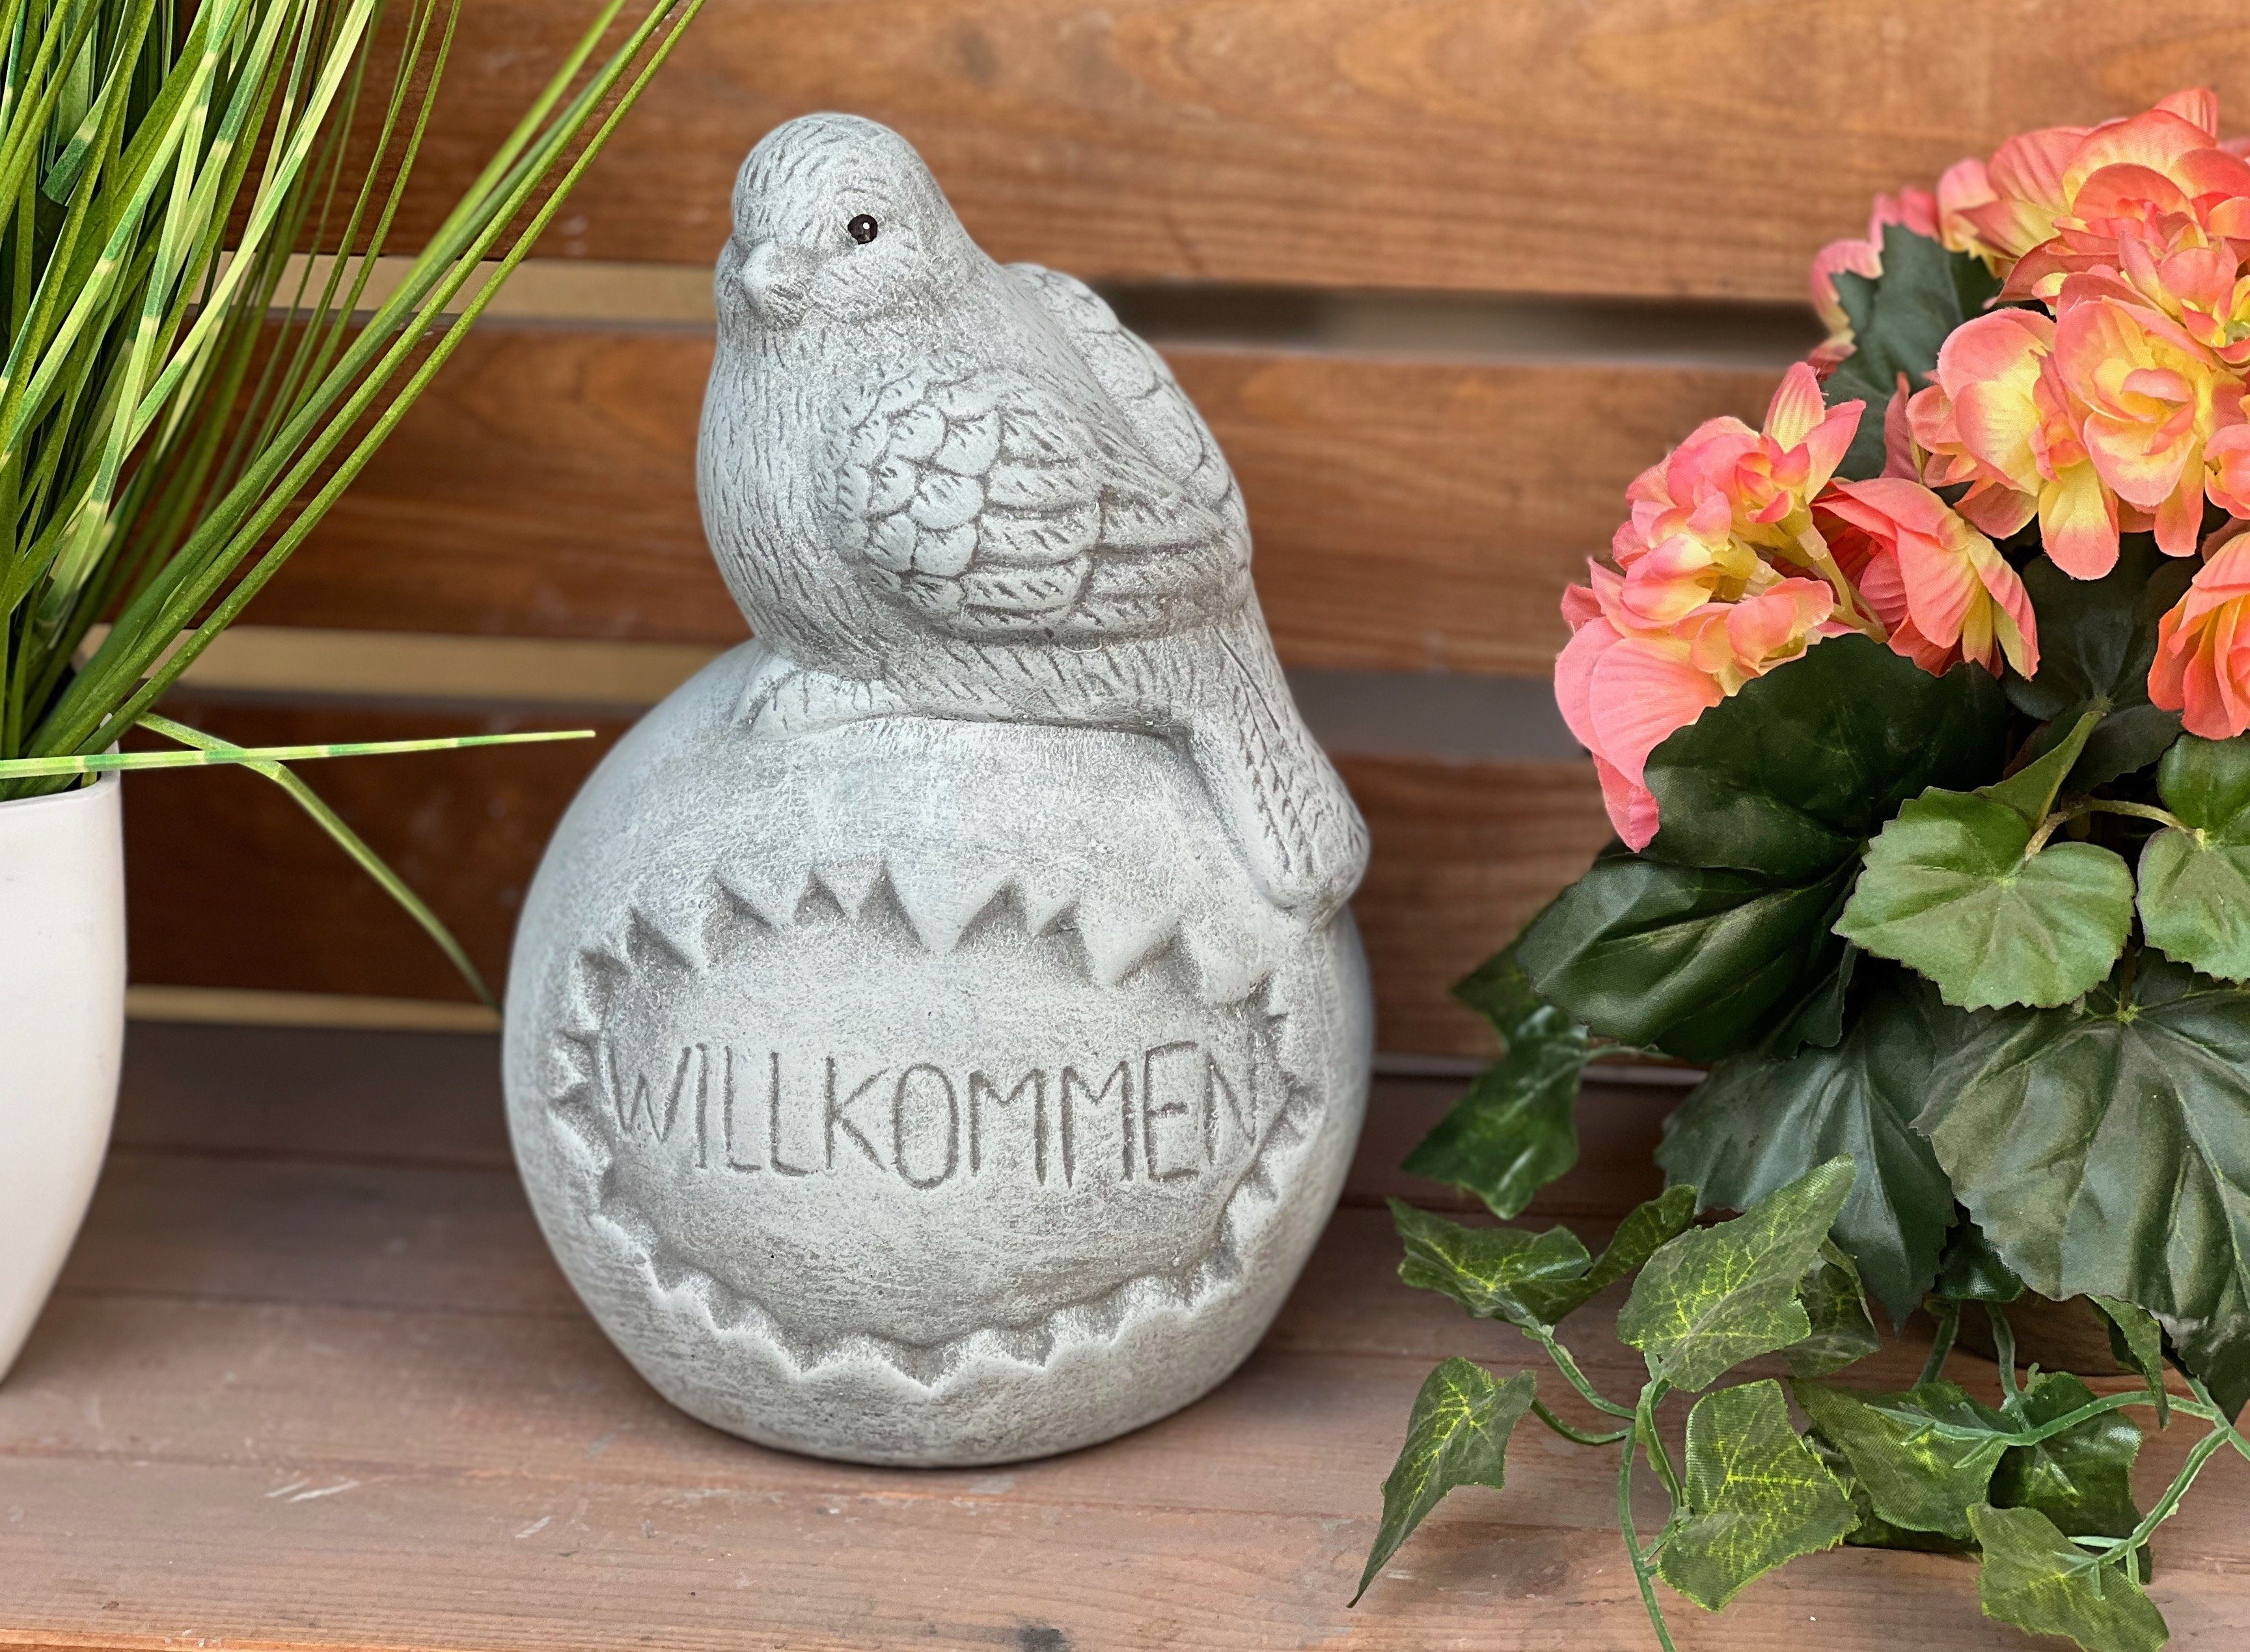 Stone and Style Gartenfigur Steinfigur "Willkommen", Kugel frostfest Steinguss auf Vogel